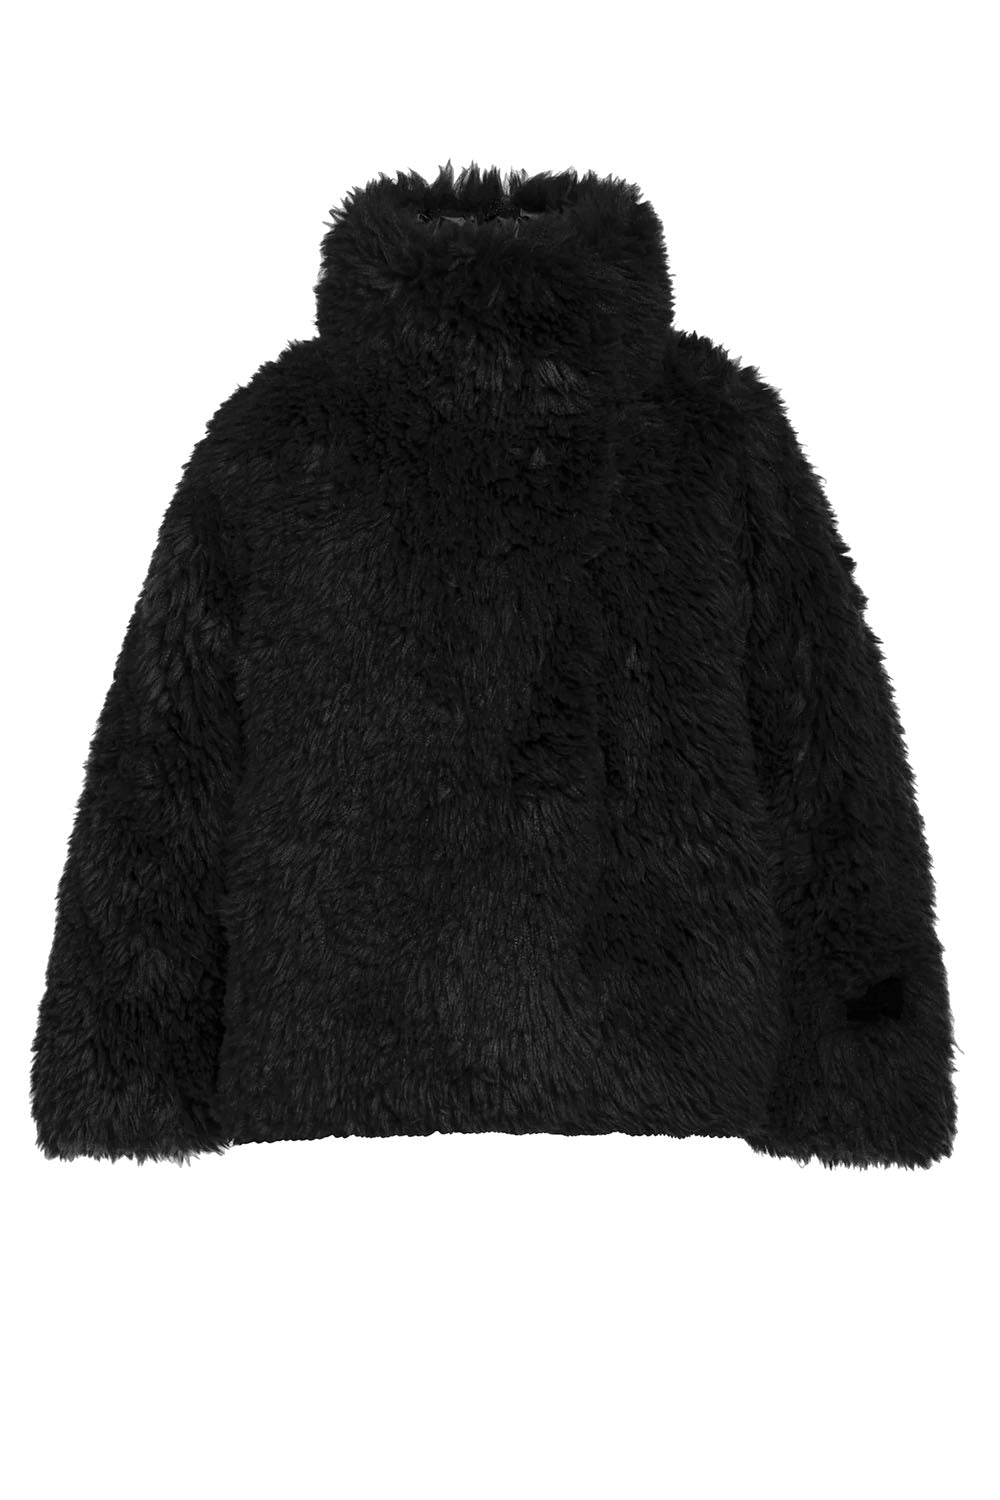 Woolly jacket black